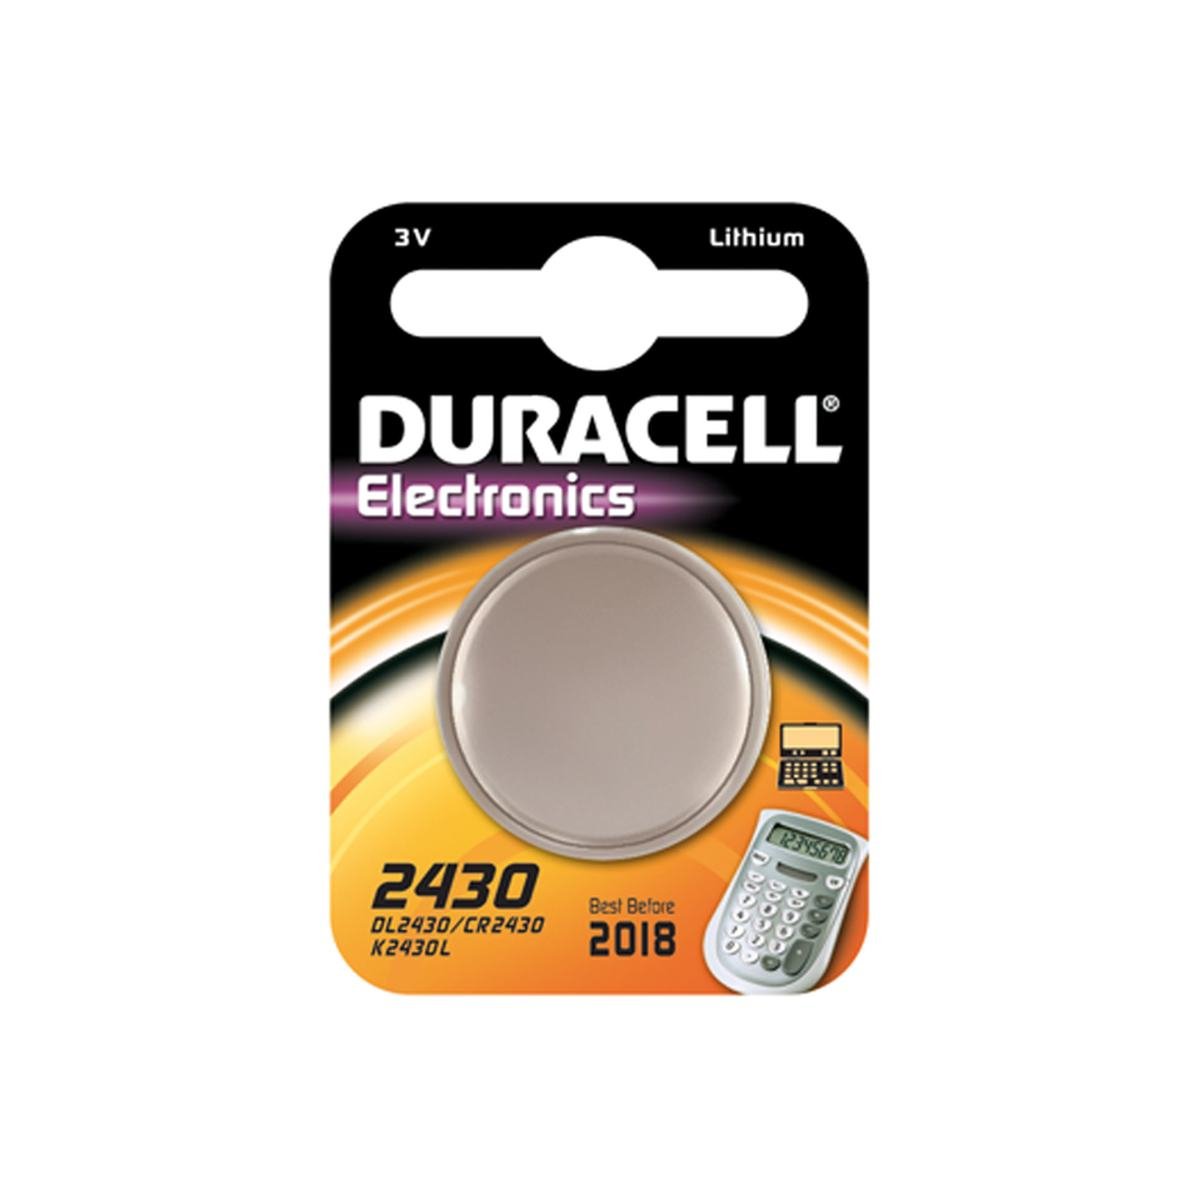 Knappcell batteri cr2430 3v 1 st. Paket - Duracell